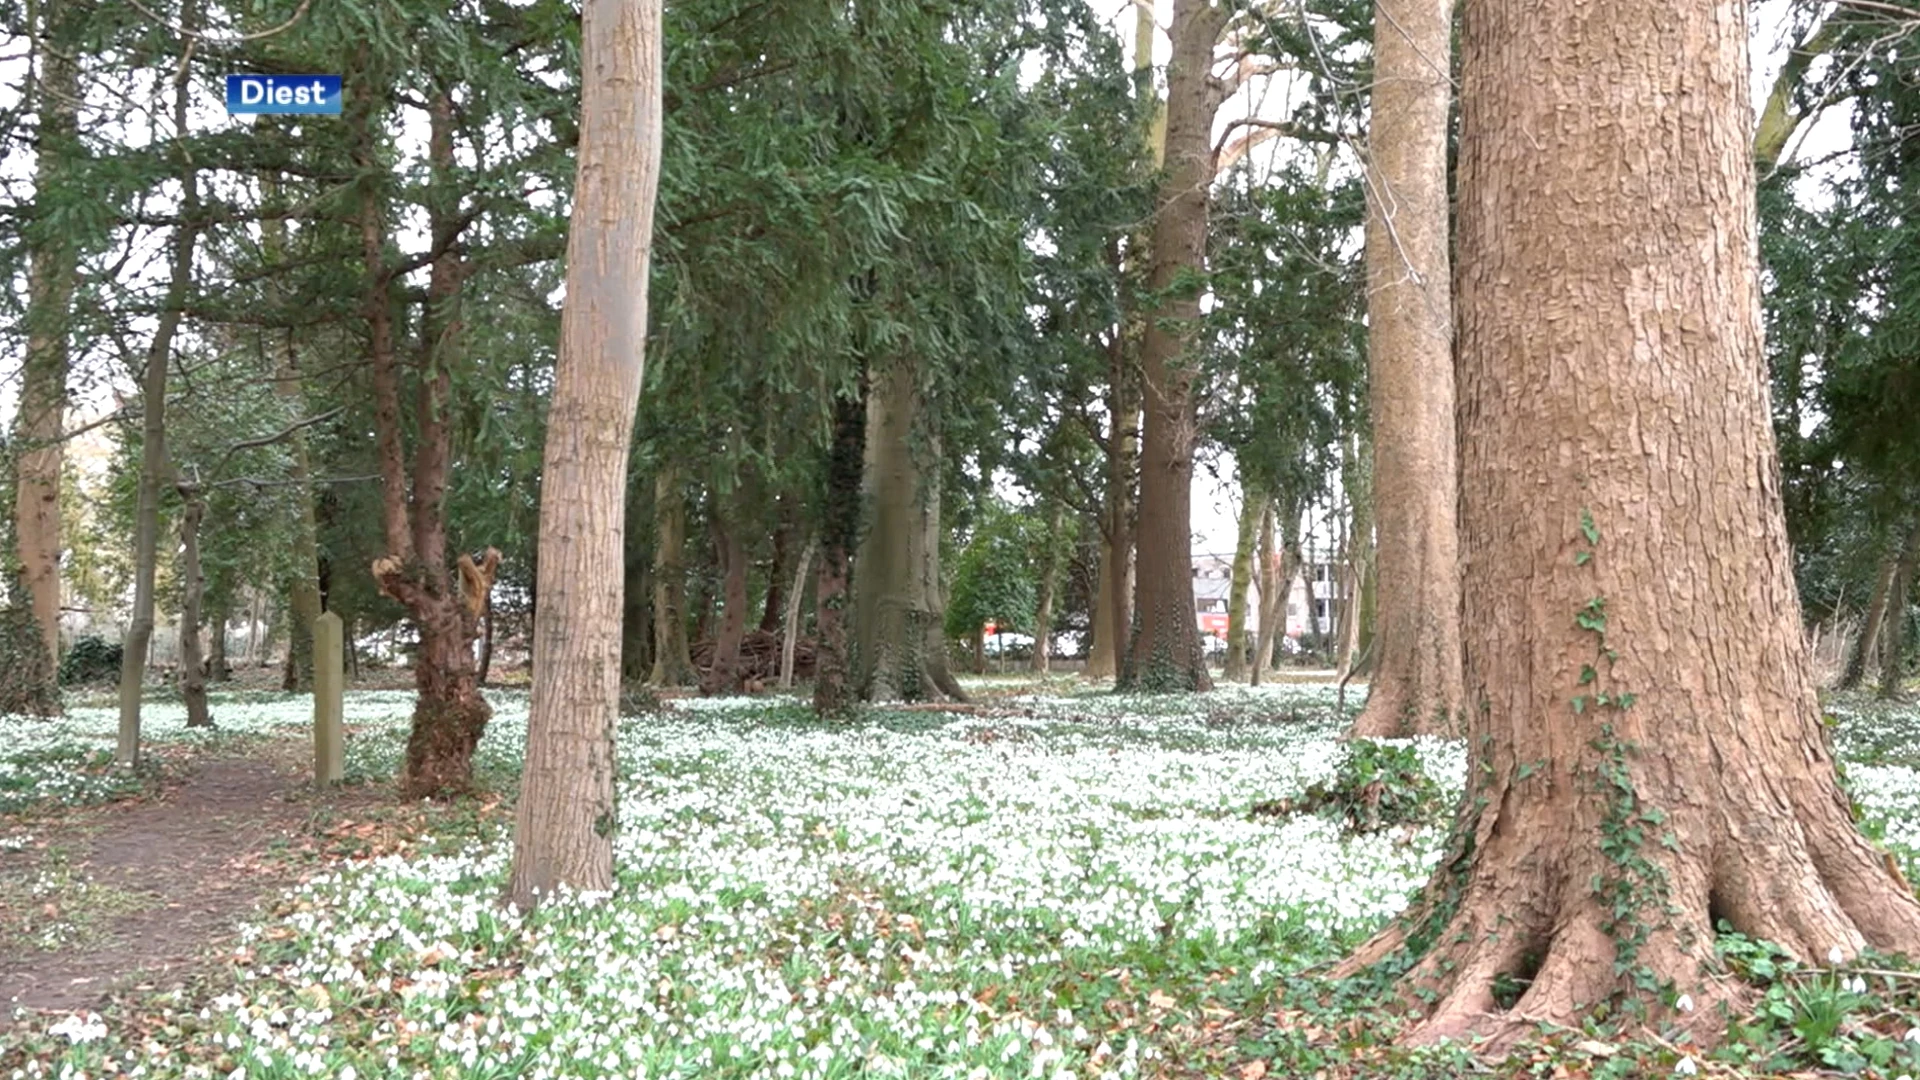 Sneeuwklokjes zorgen voor prachtig wit tapijt in centrum van Diest